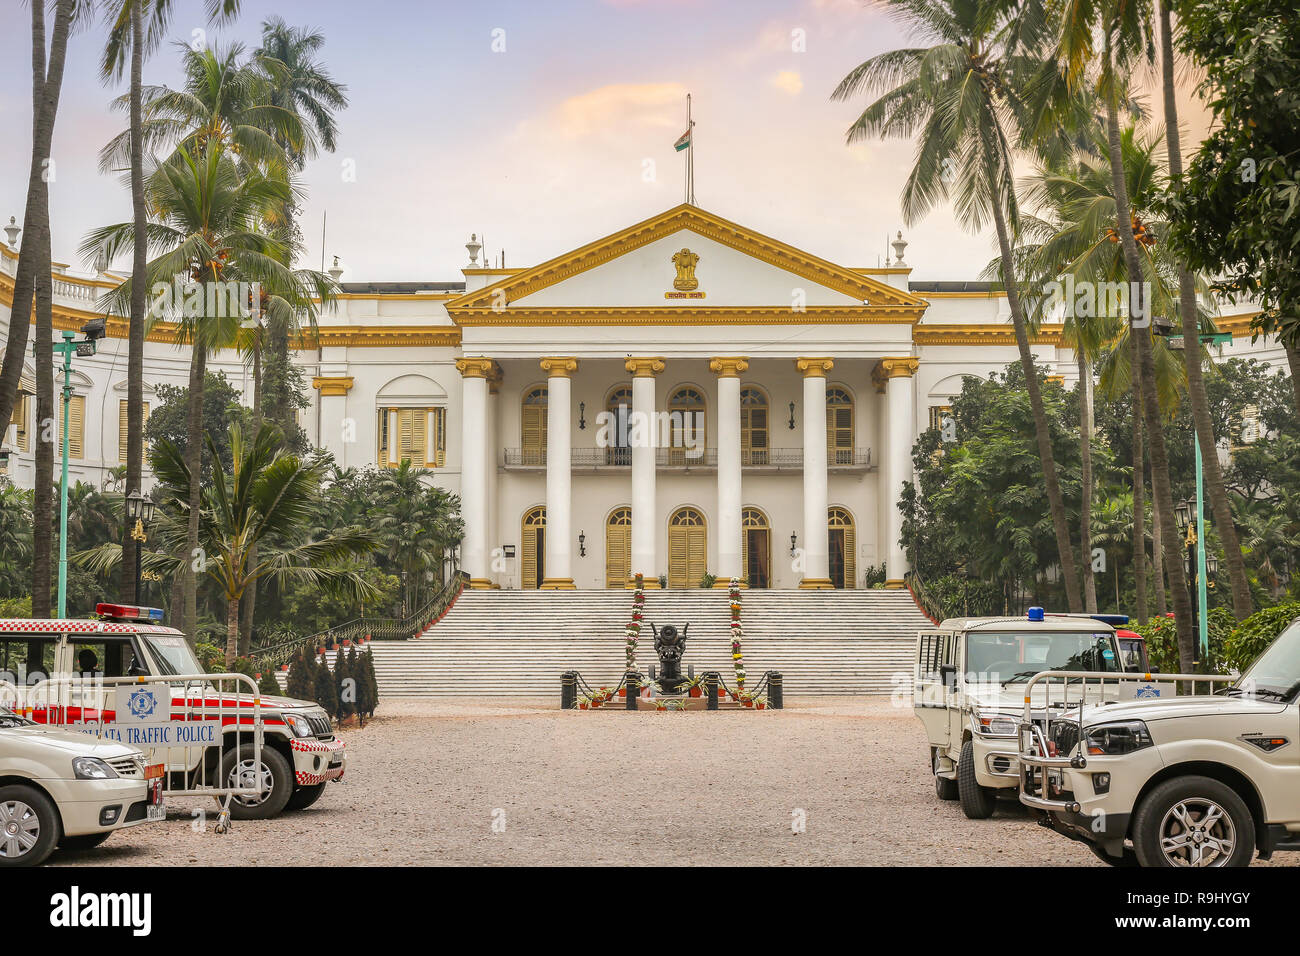 Gouverneur House est une célèbre ville historique et ancienne ville classique structure architecture coloniale qui abrite le gouverneur de l'ouest du Bengale en Inde. Banque D'Images